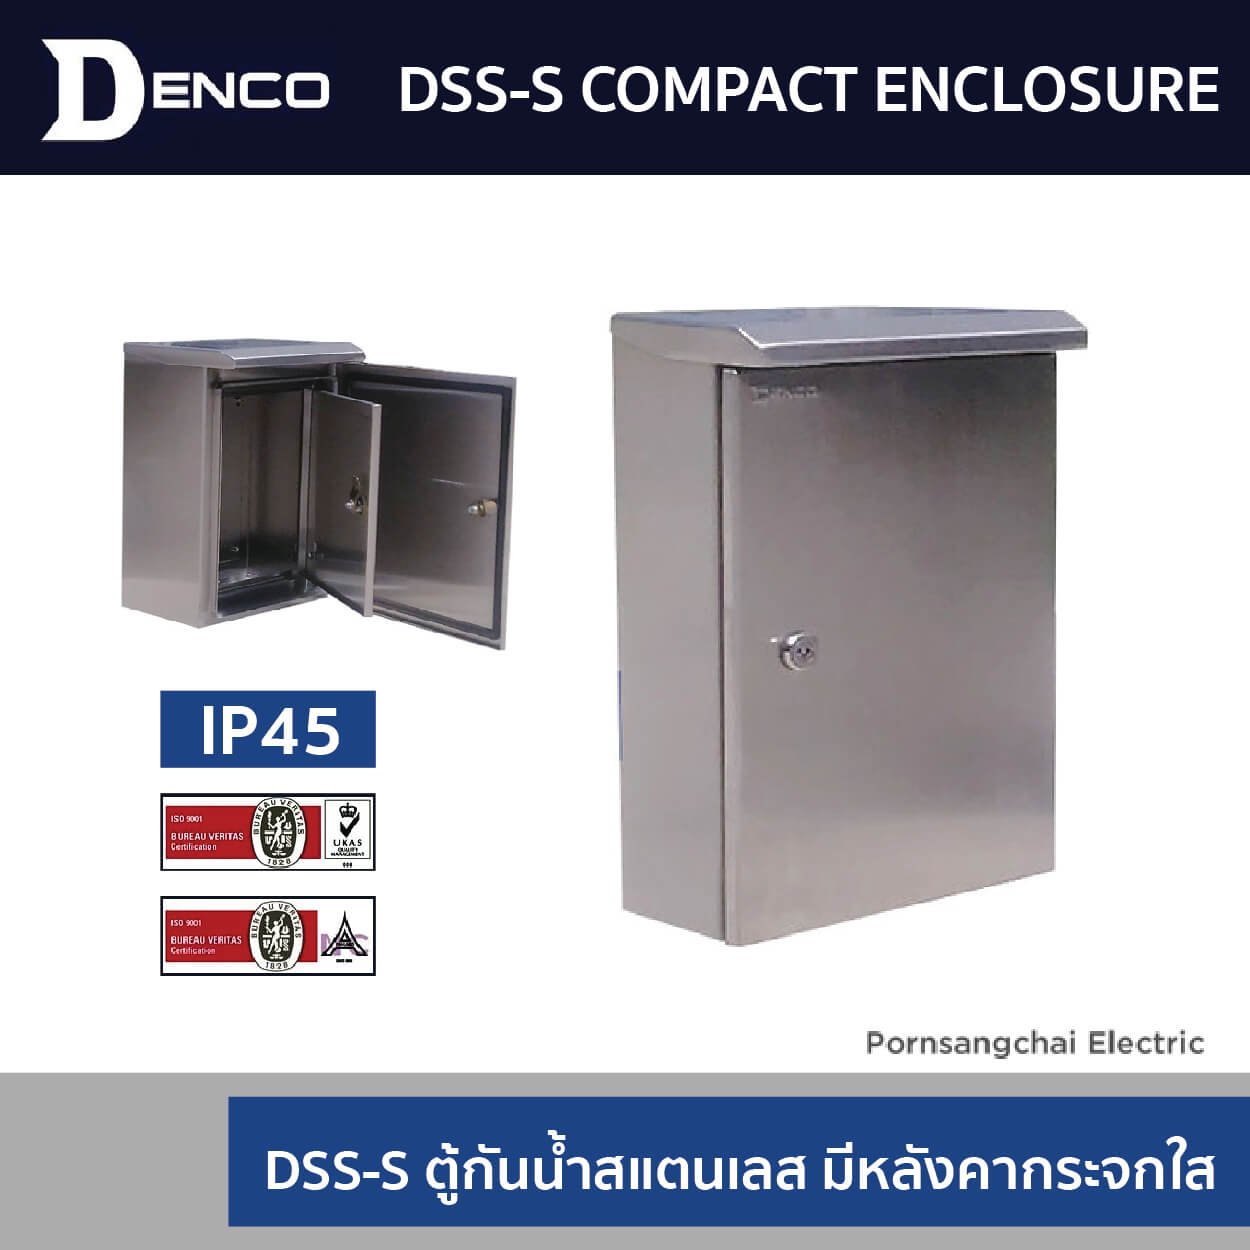 DENCO ตู้กันนํ้าสแตนเลสประตู 2 ชั้น มีหลังคา รุ่น DSS-S